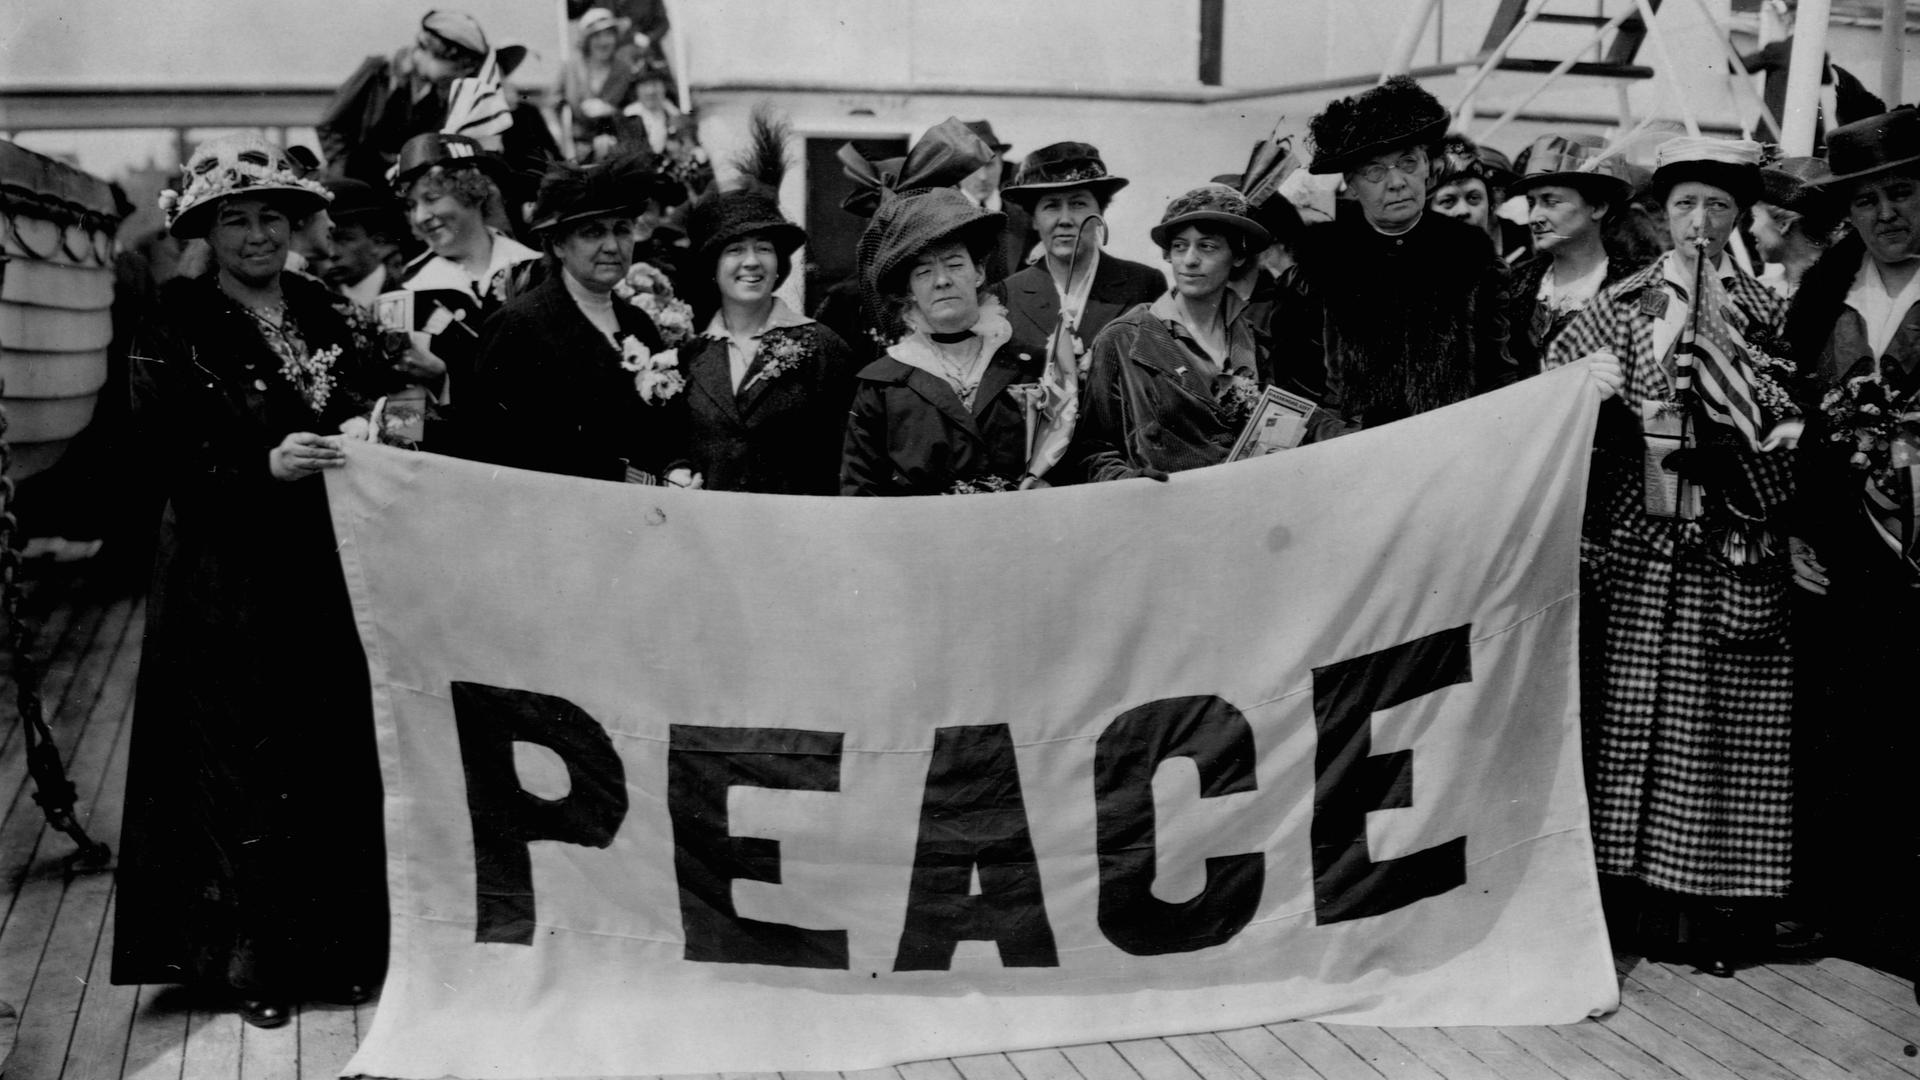 Historisches Schwarzweißfoto von Frauen, die 1915 auf einem Schiffsdeck stehen und ein Plakat mit der Aufschrift "Peace" in die Kameras halten.